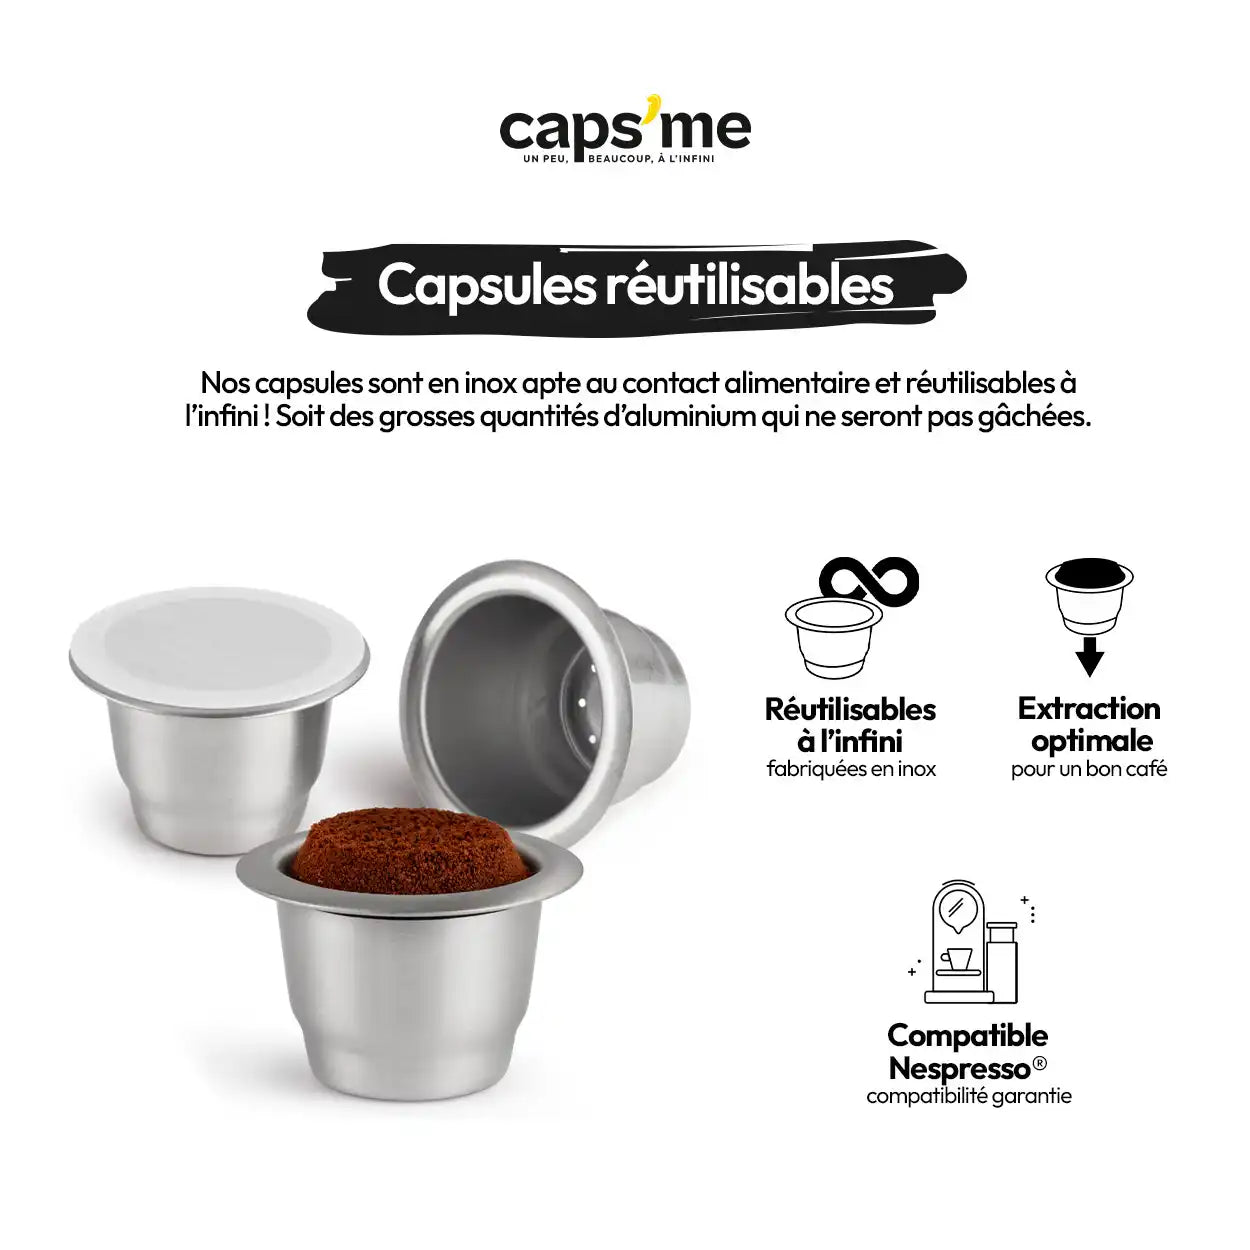 capsule reutilisable